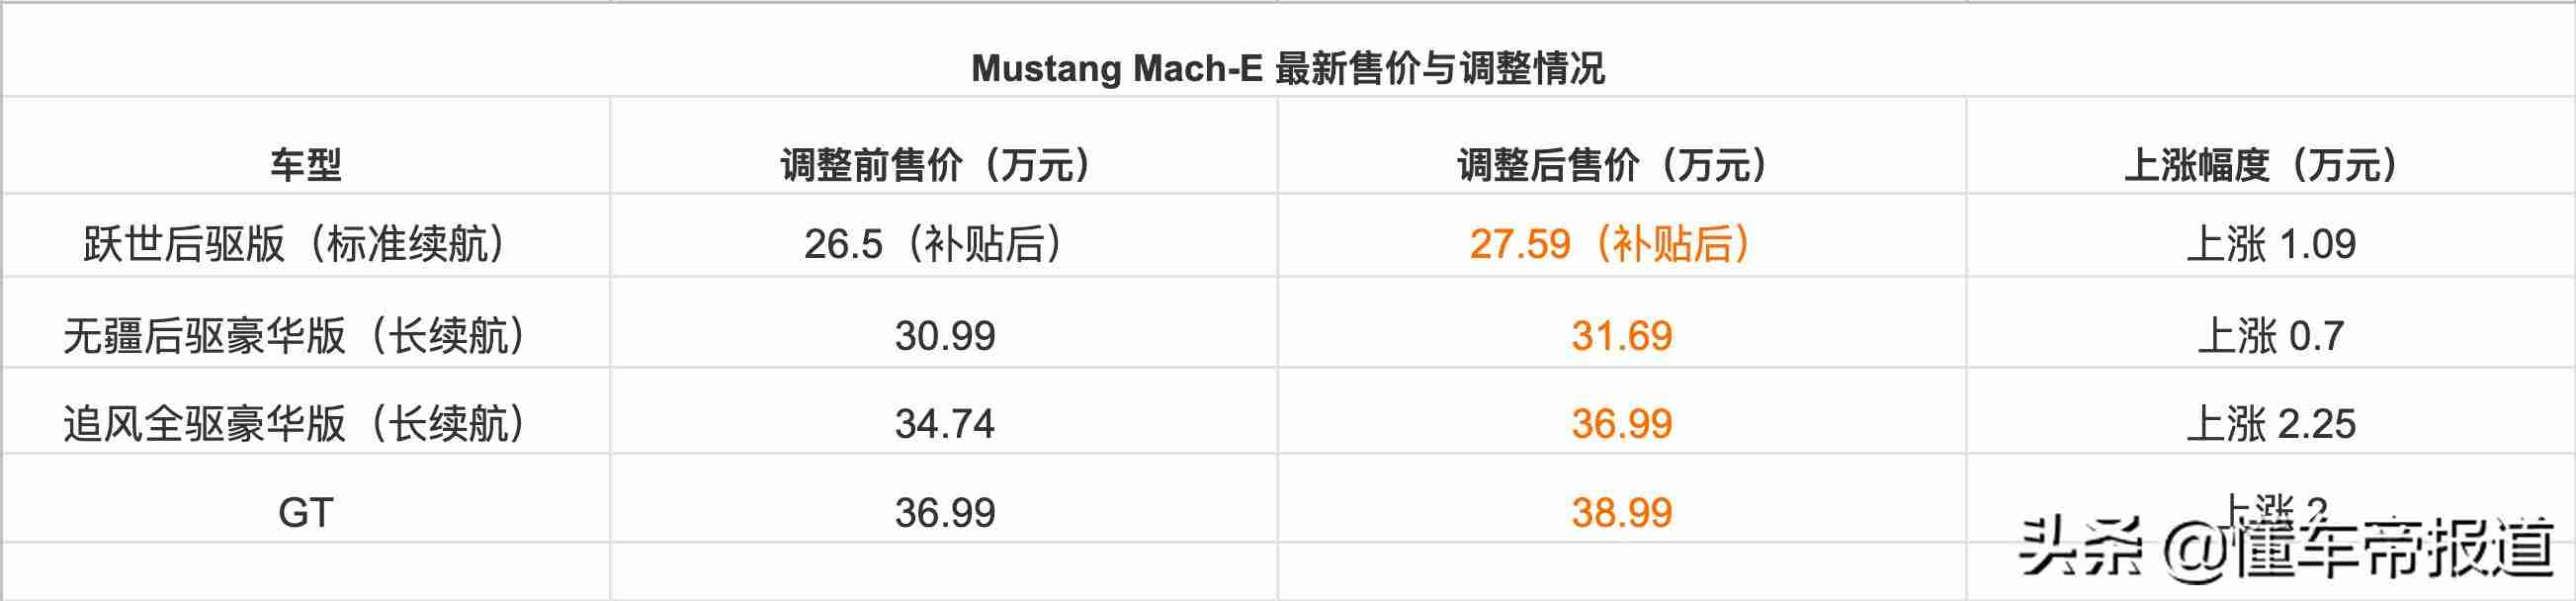 mach-e享不享受补贴，资讯最高上涨2.25万元，福特mustang